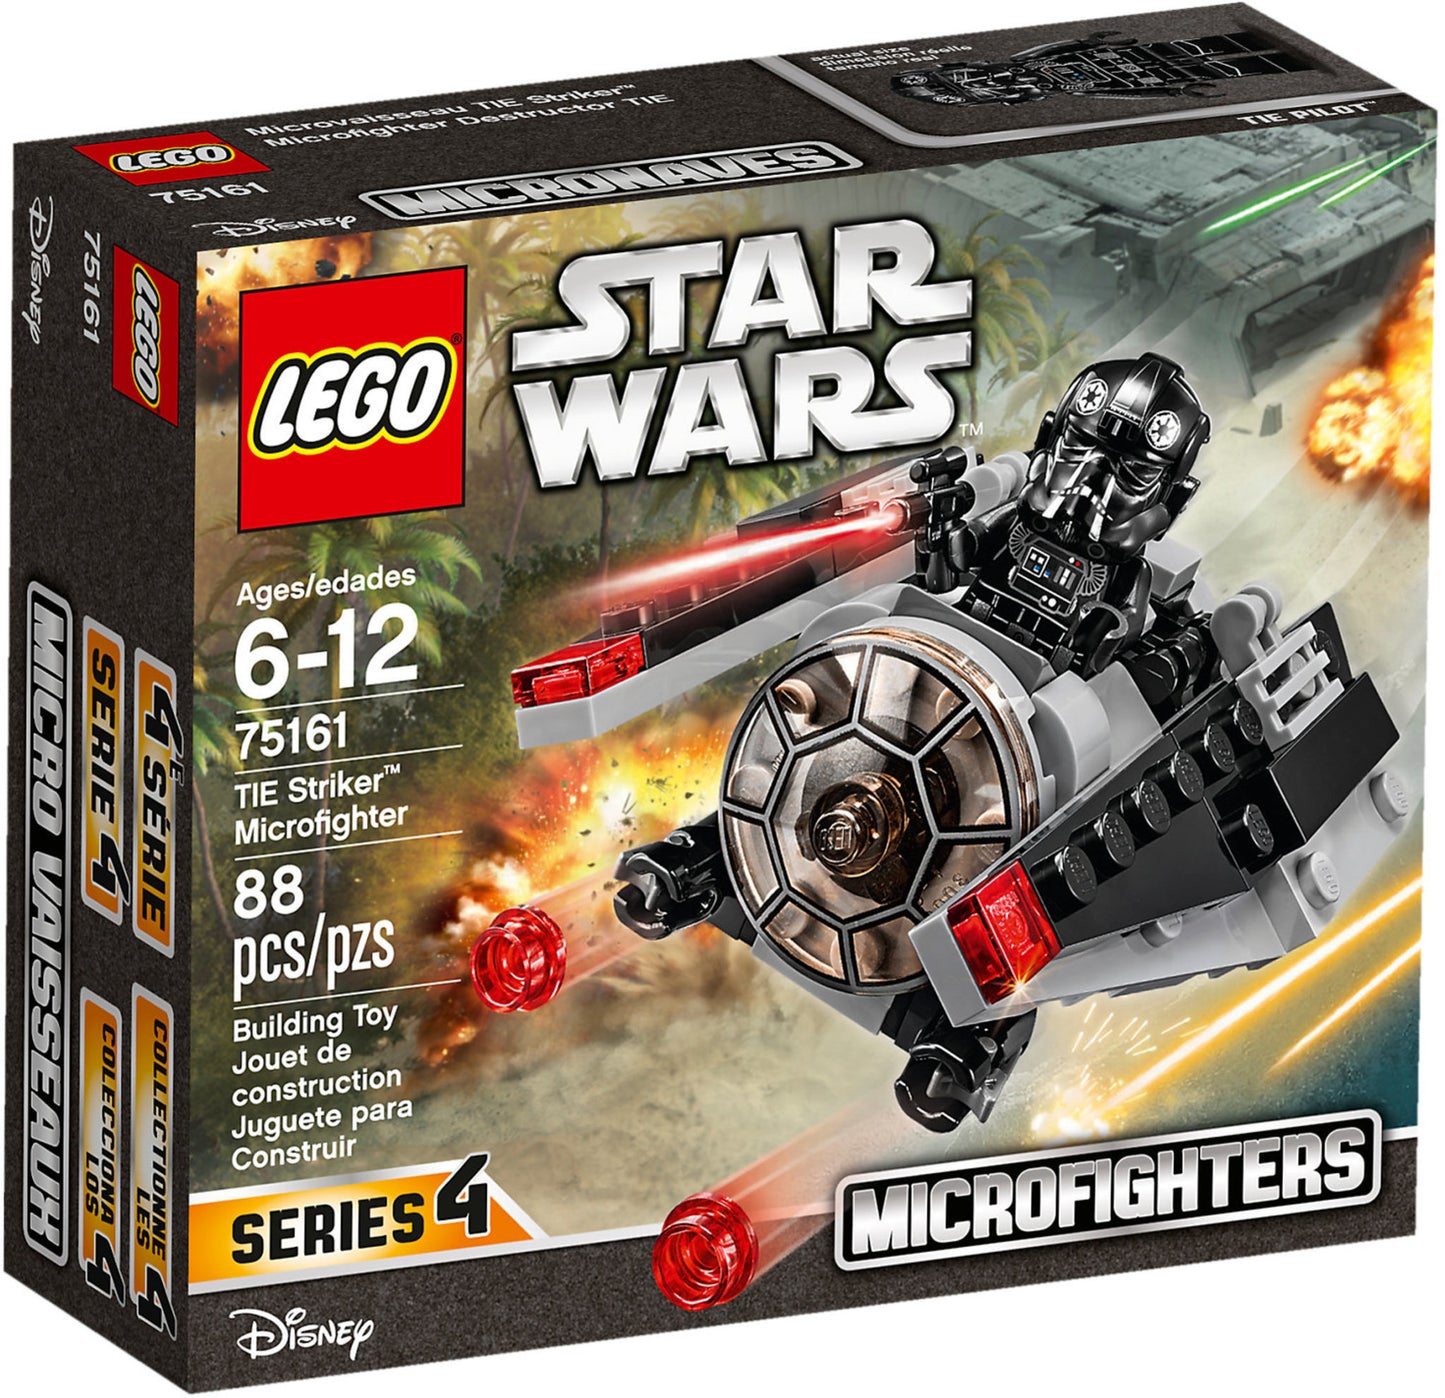 75161 LEGO Star Wars - Microfighter Tie Striker™